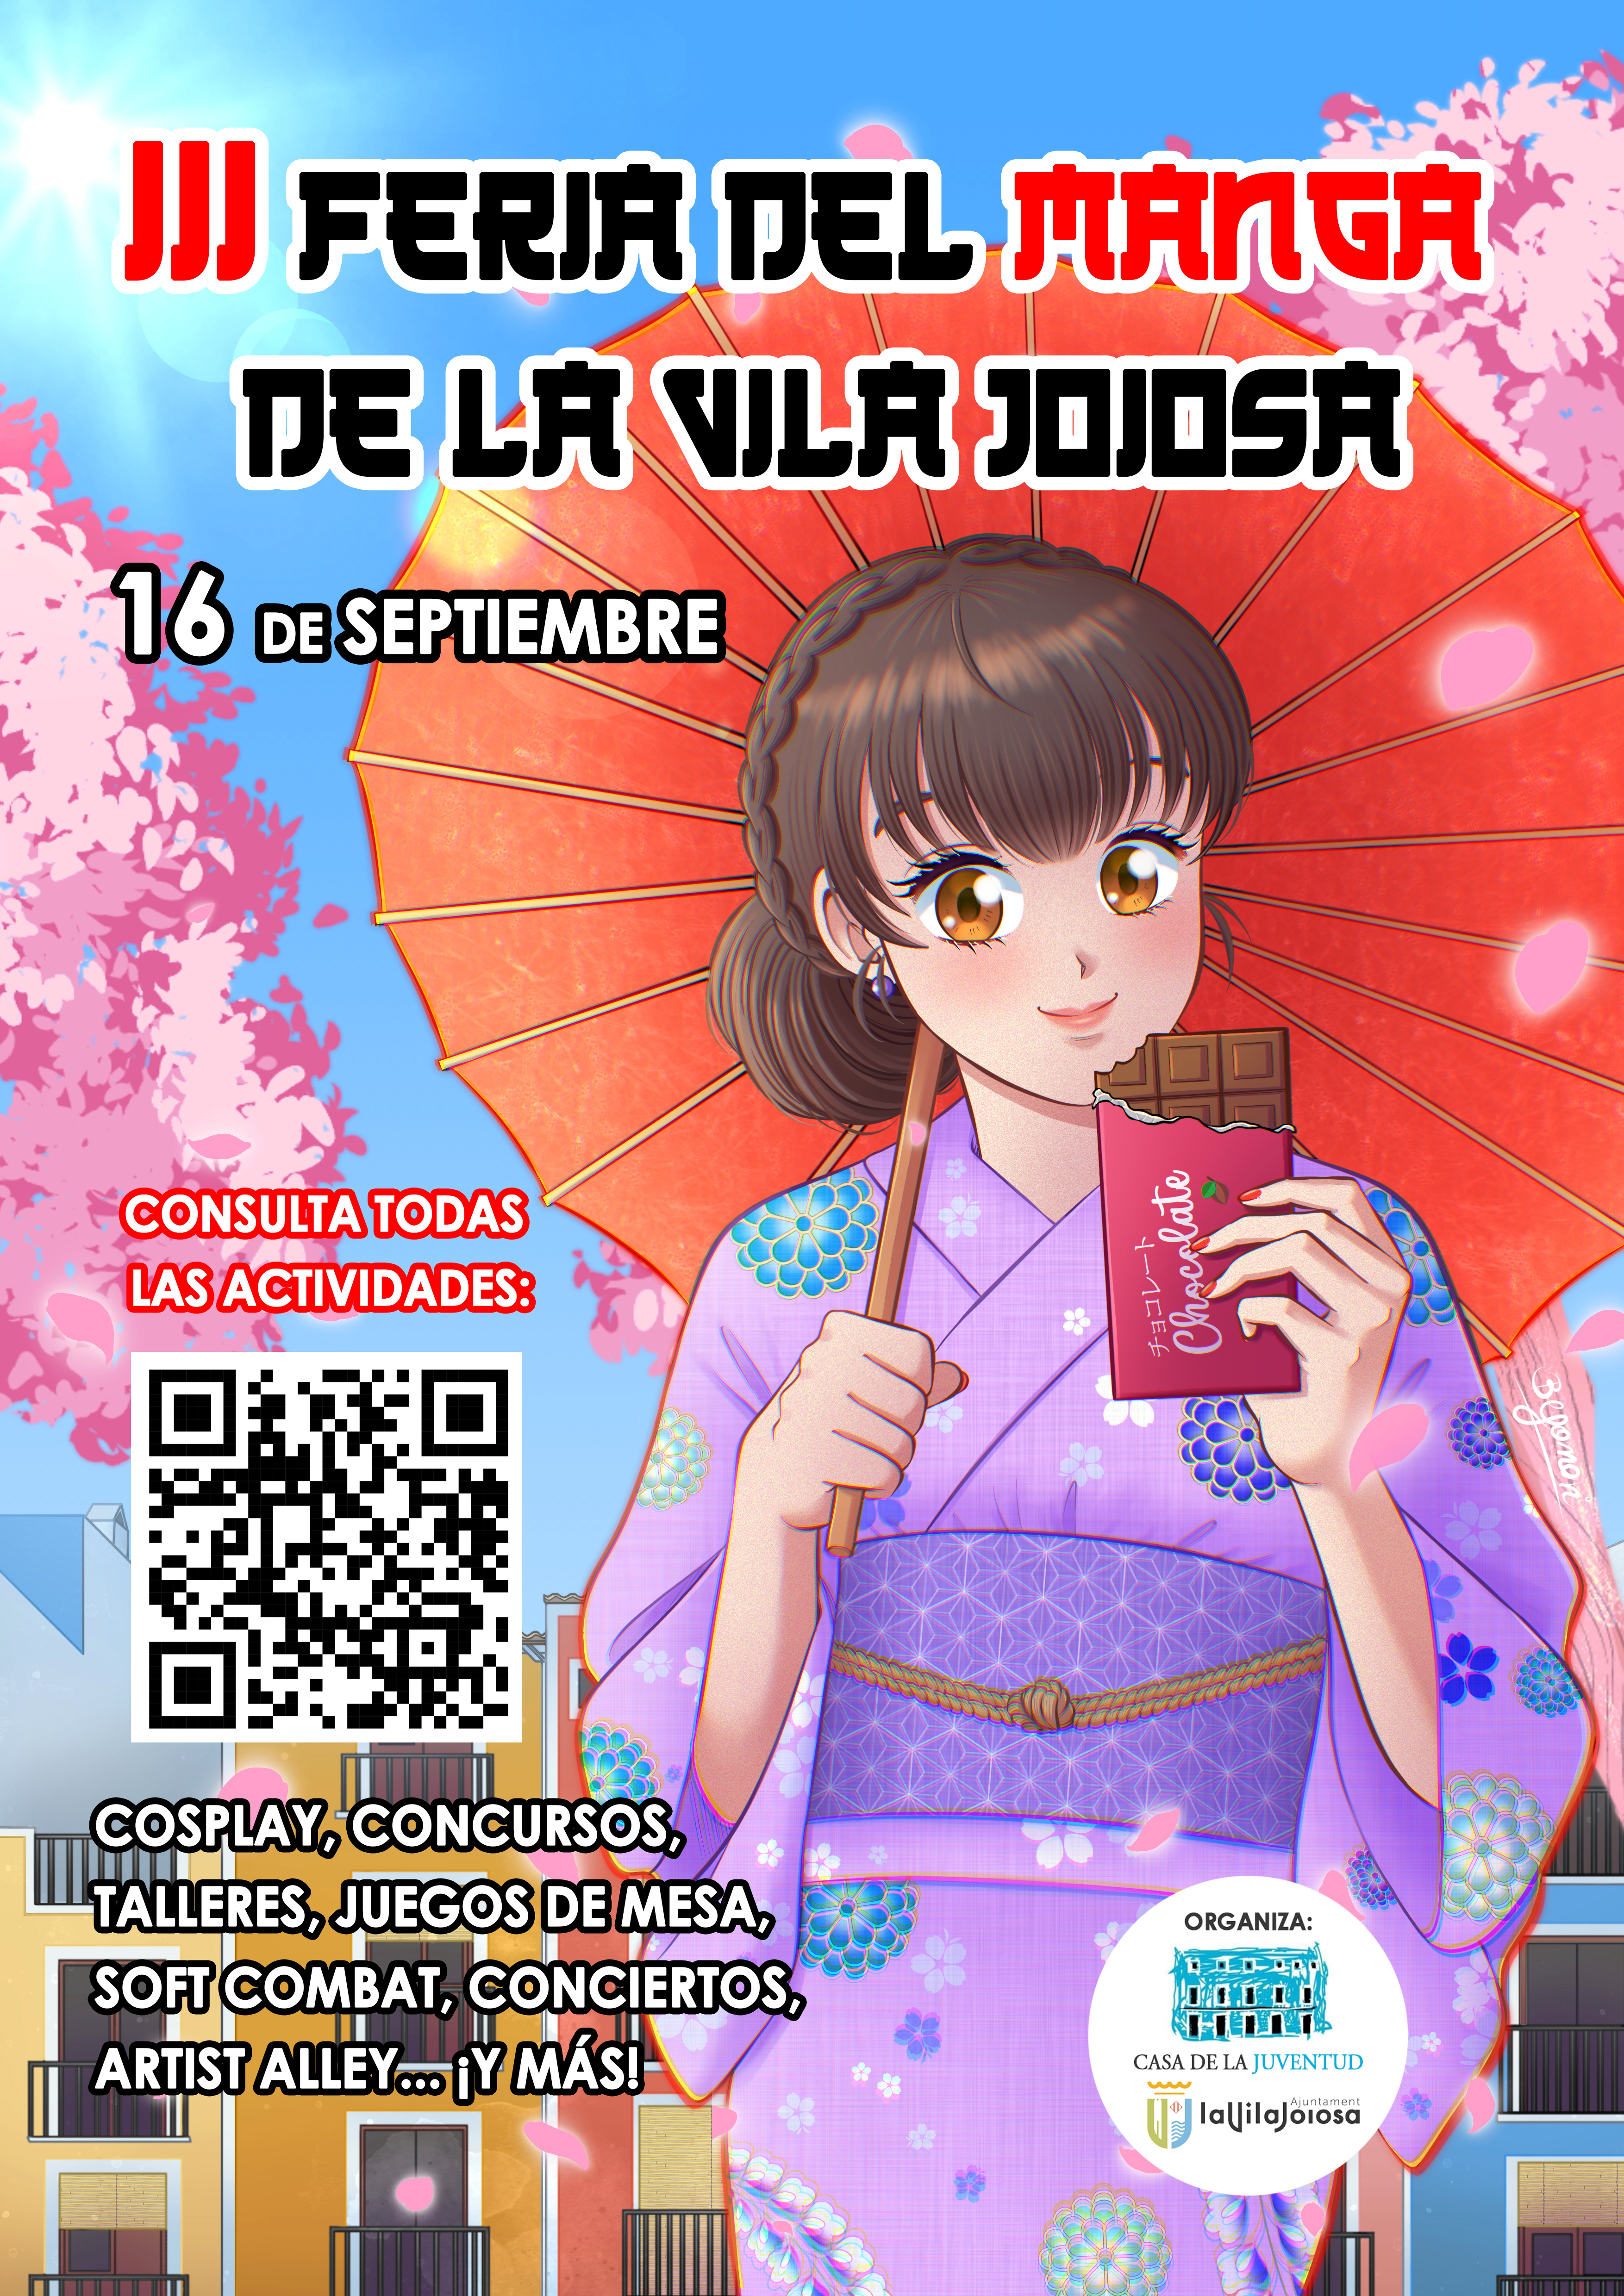 La Fira del Manga i Cultura Japonesa torna a la Vila Joiosa al setembre